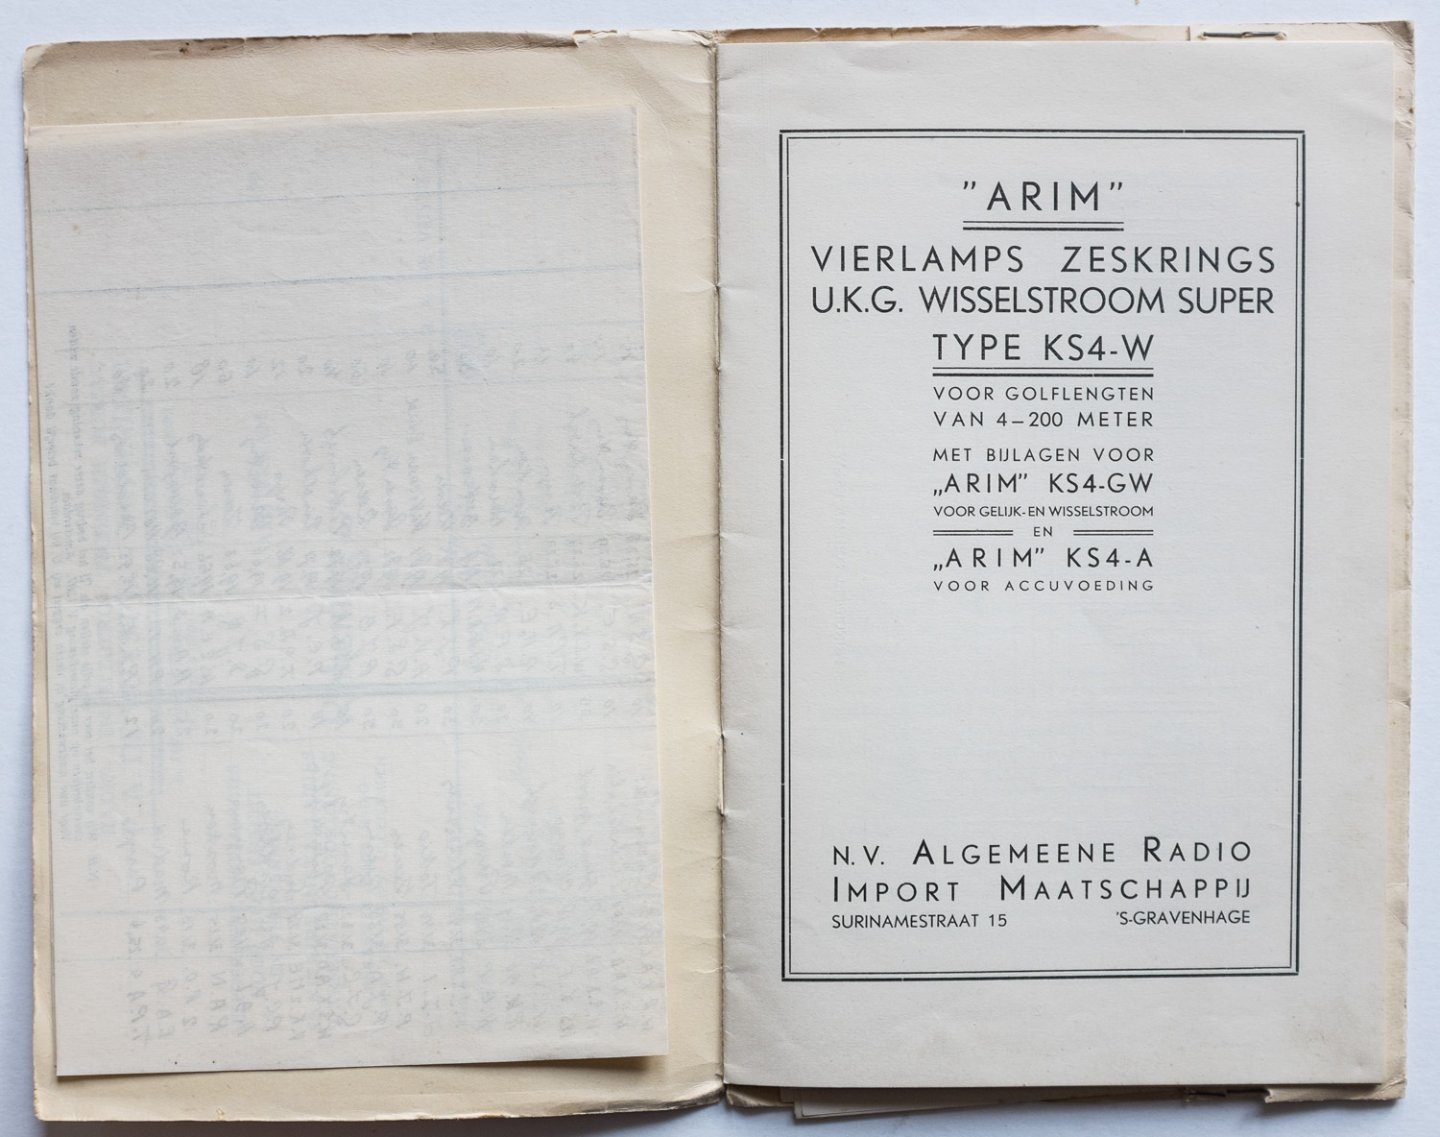 ARIM - "ARIM" Vierlamps  Zeskrings U.K.G. Wisselstroom Super Type KS4-W voor golflengten van 4 - 200 meter